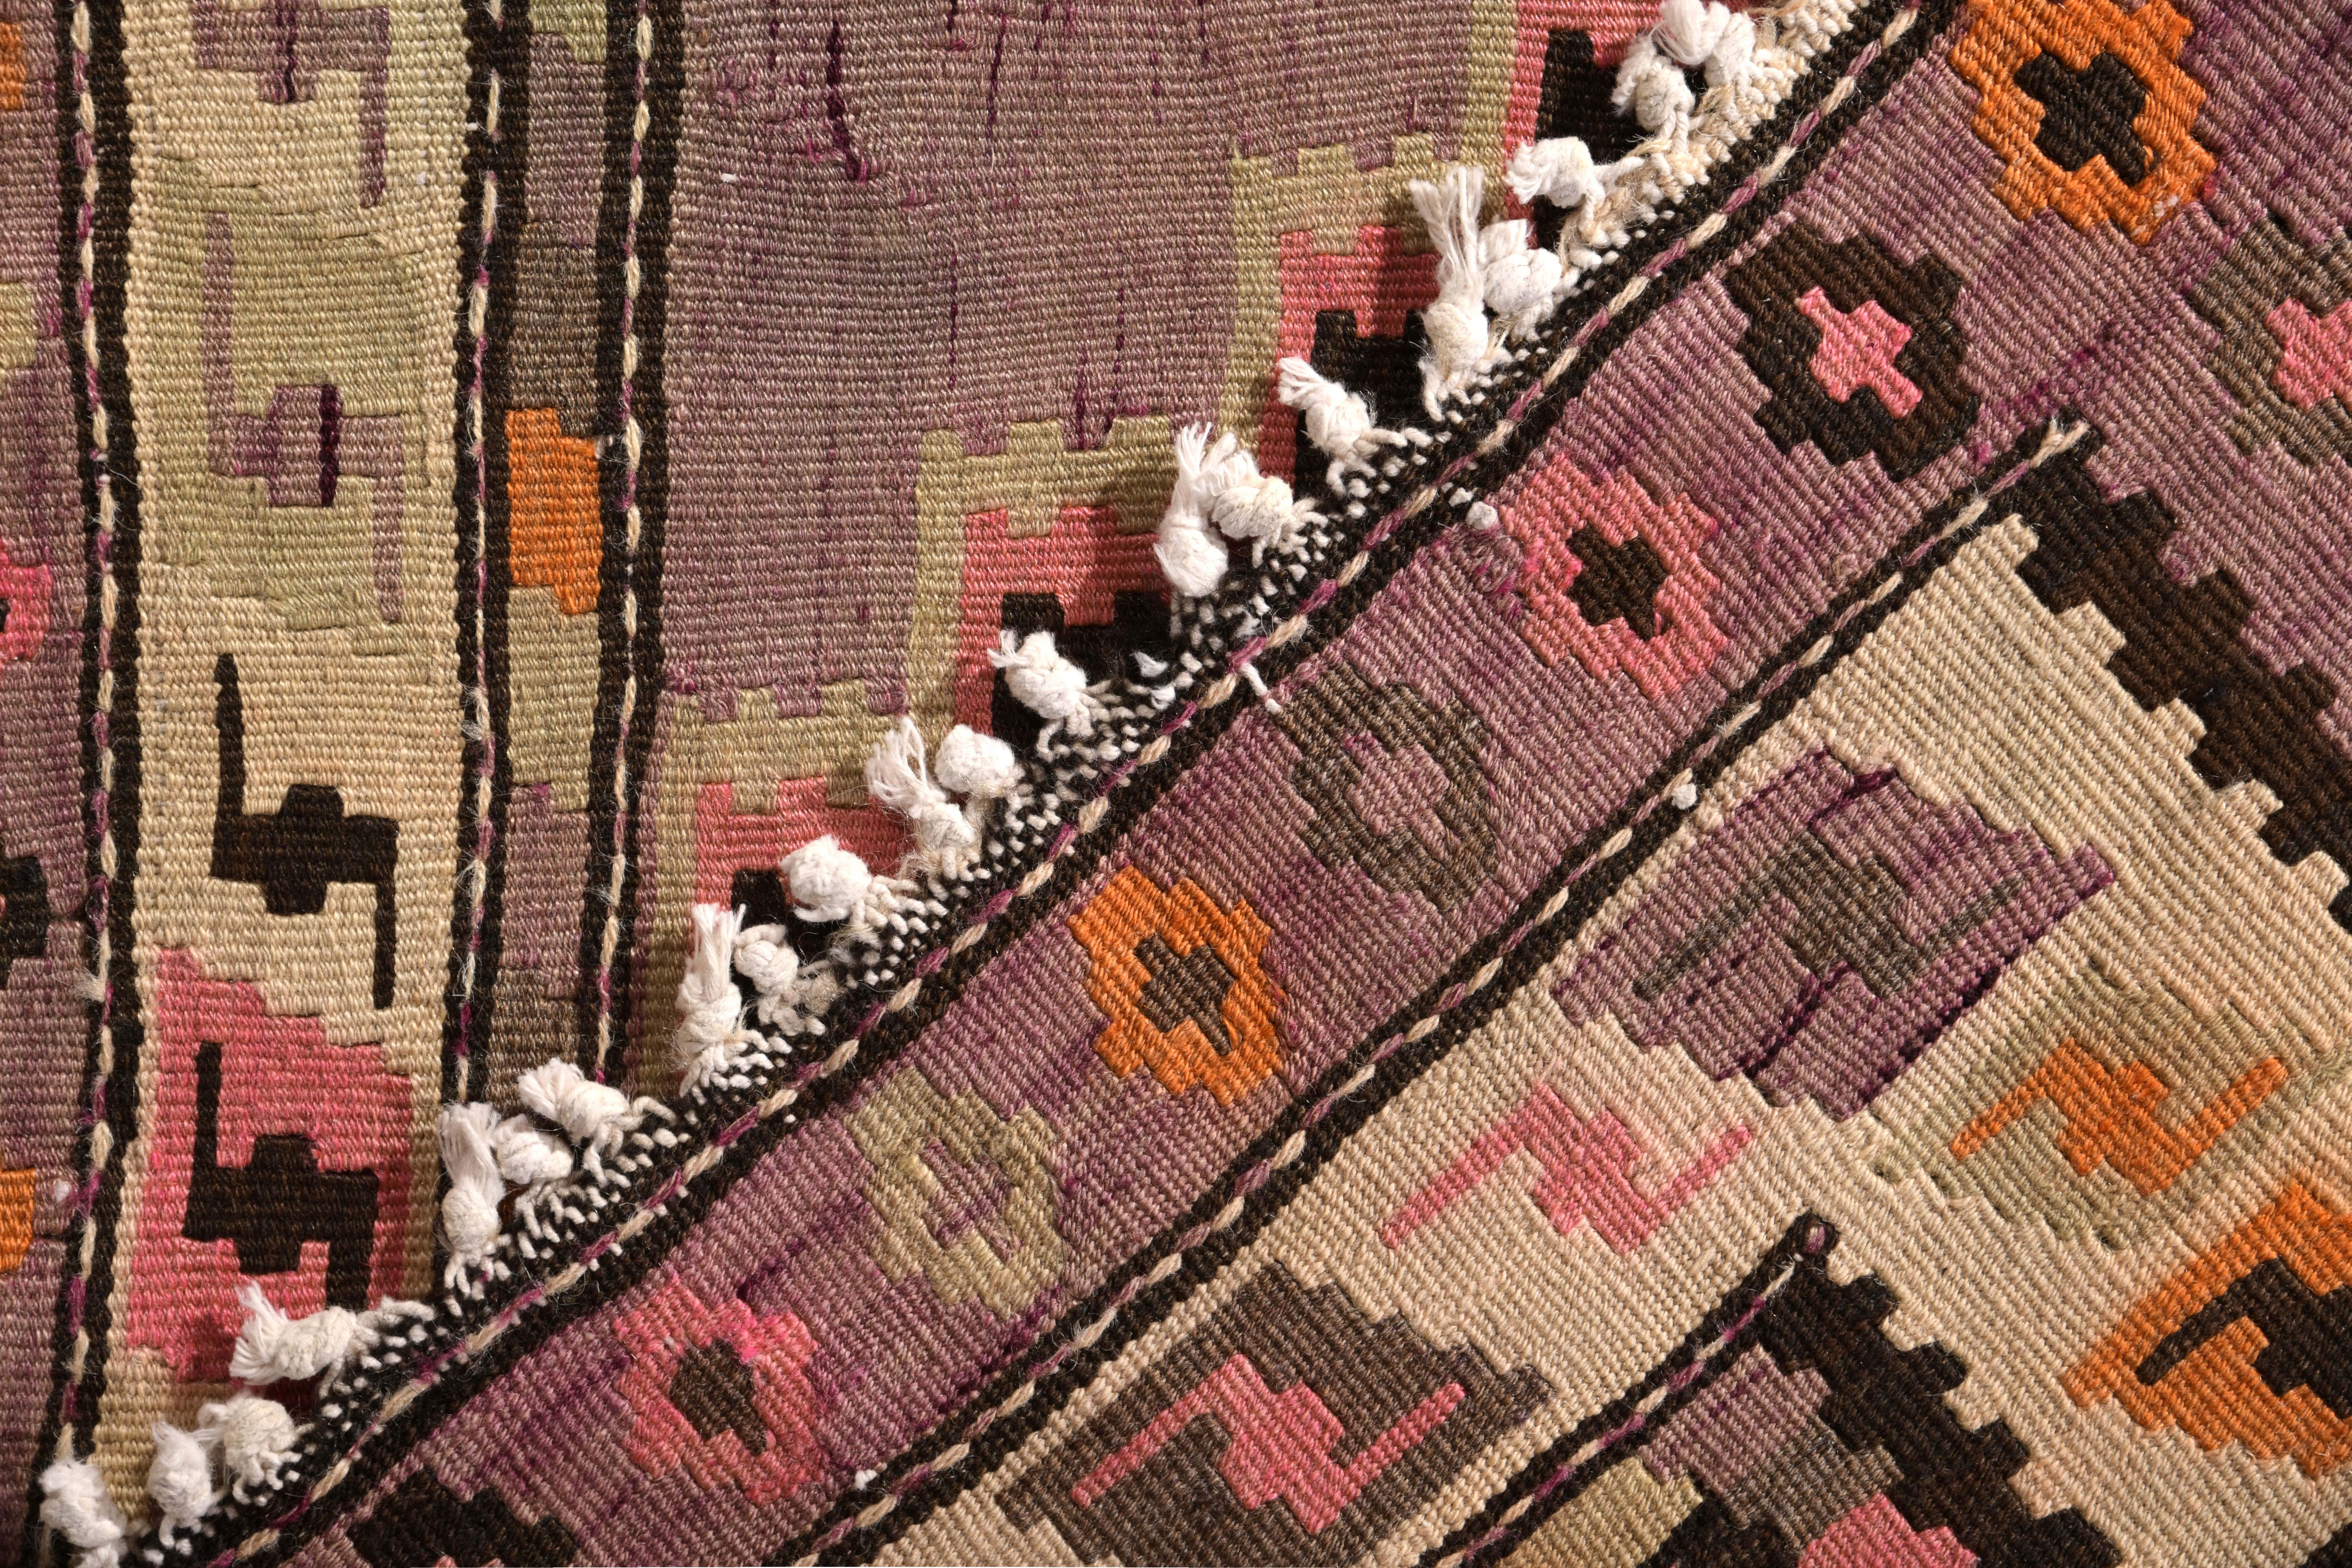 Mid-20th Century Midcentury Vintage Persian Kilim Rug in Beige Geometric Pattern by Rug & Kilim